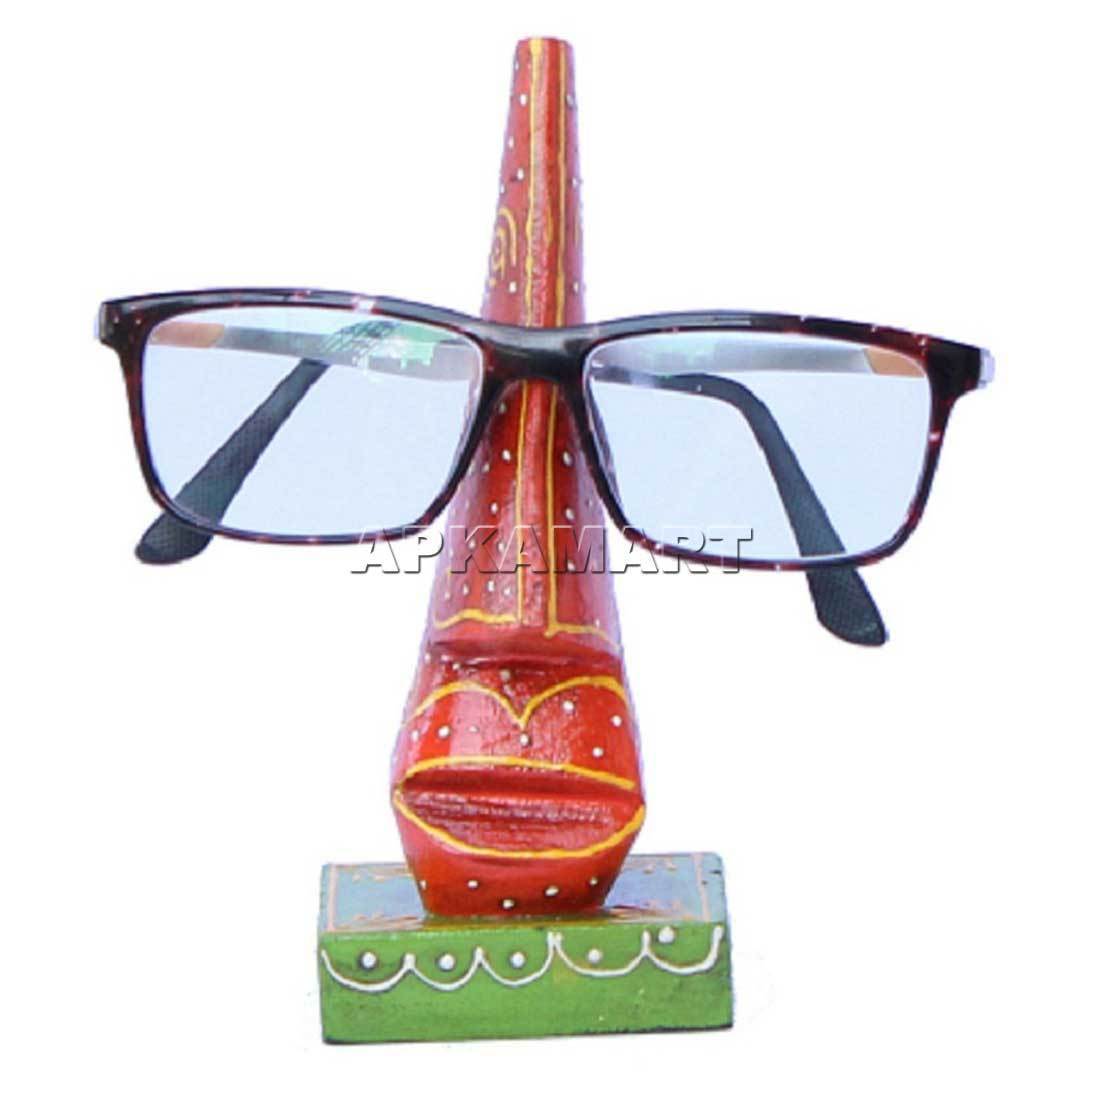 Spectacle Holder | Eyes Glasses Holder Stand - 6 Inch - ApkaMart